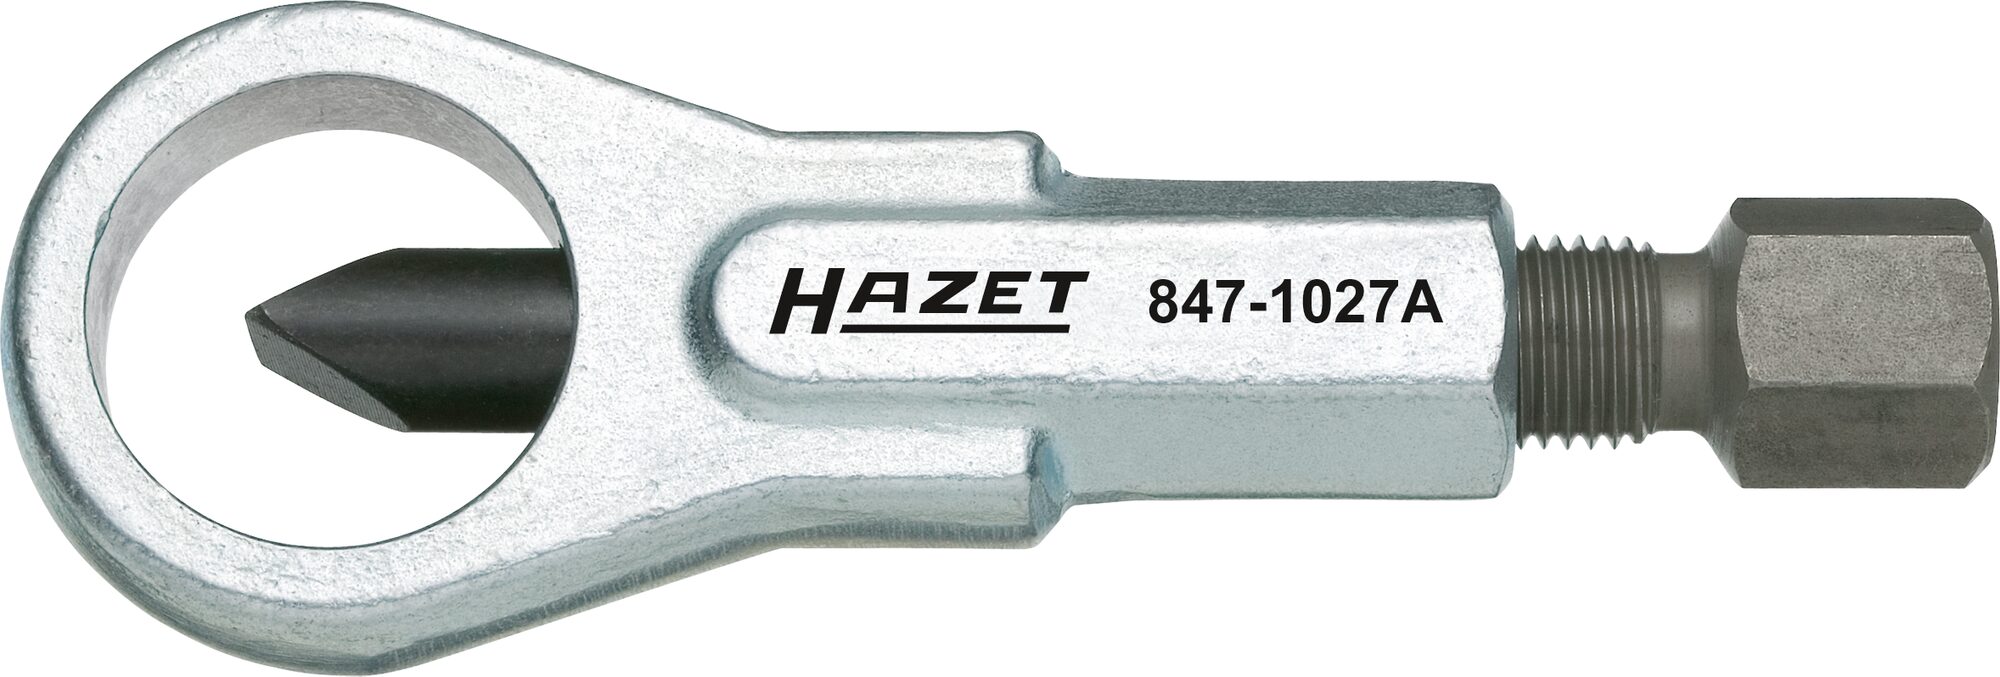 HAZET Mutternsprenger · mechanisch 847-1027A